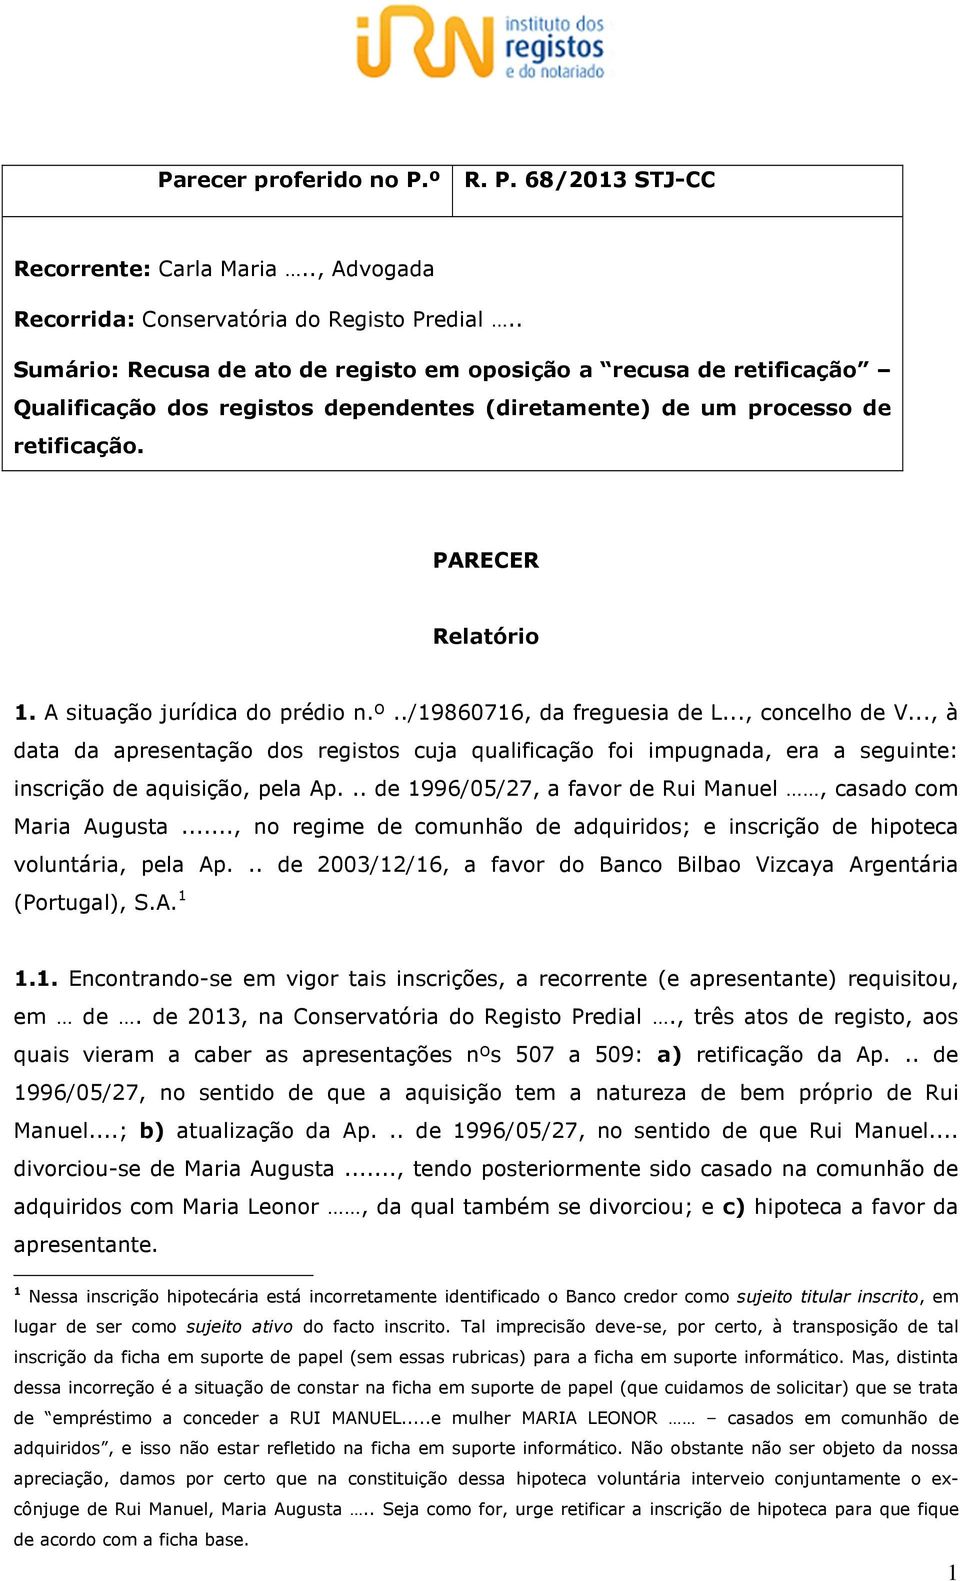 A situação jurídica do prédio n.º../19860716, da freguesia de L..., concelho de V.